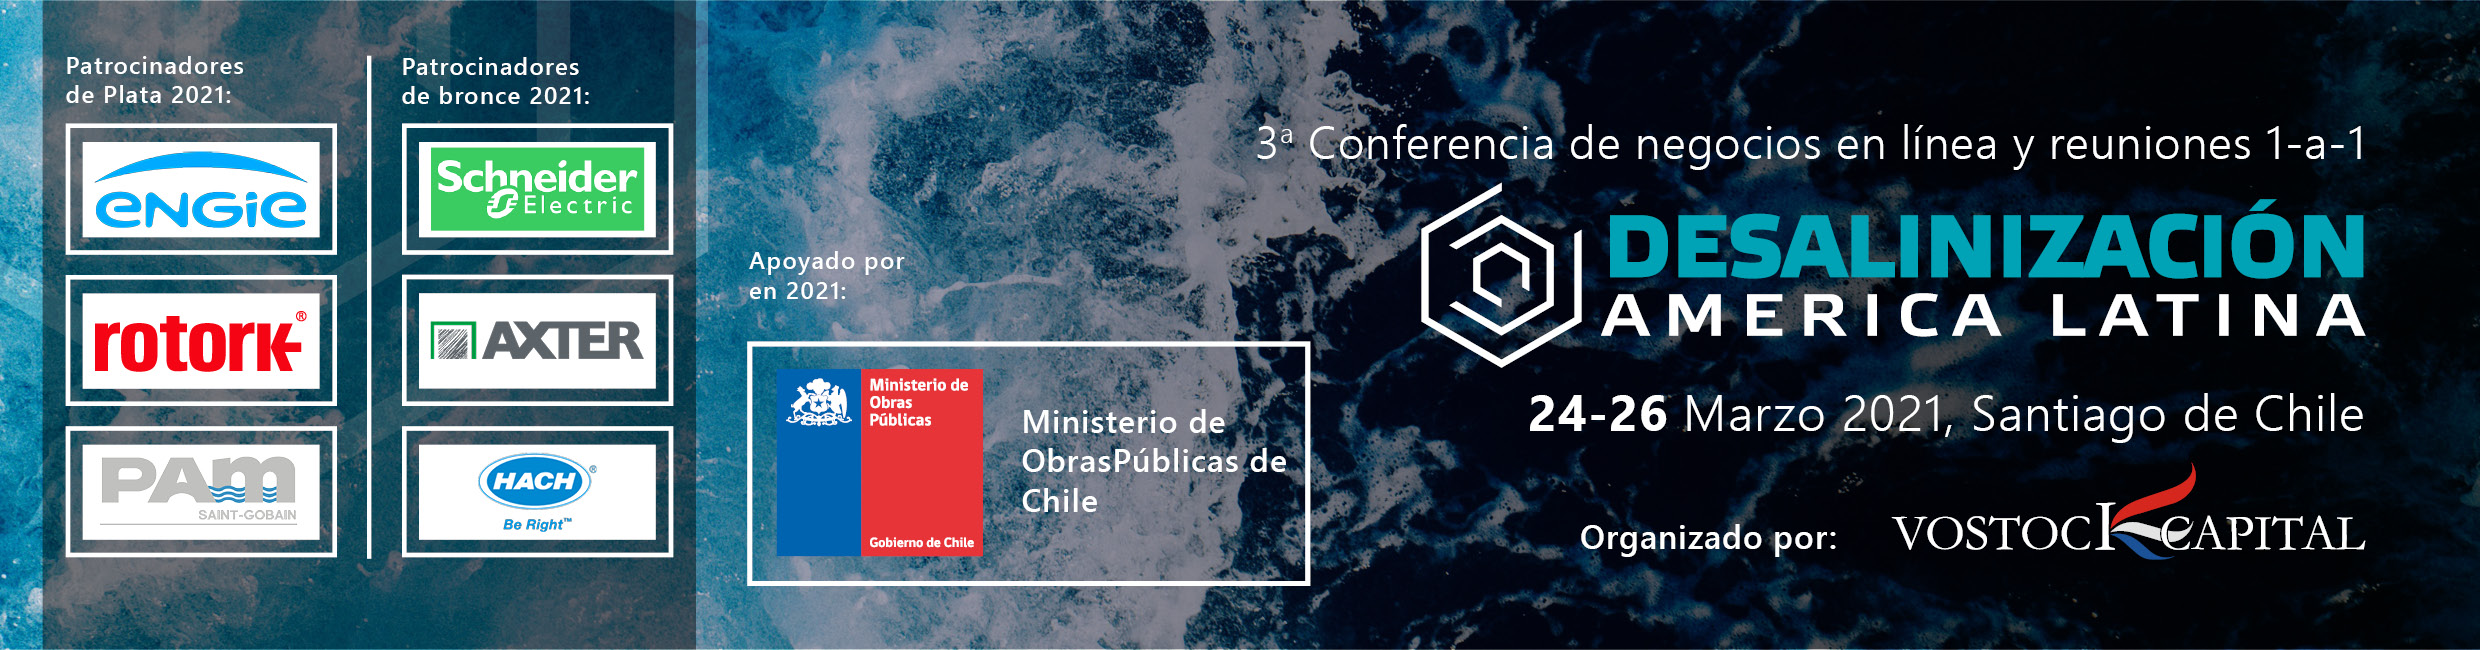 Hach participa en la 3a Conferencia de Desalinización América Latina